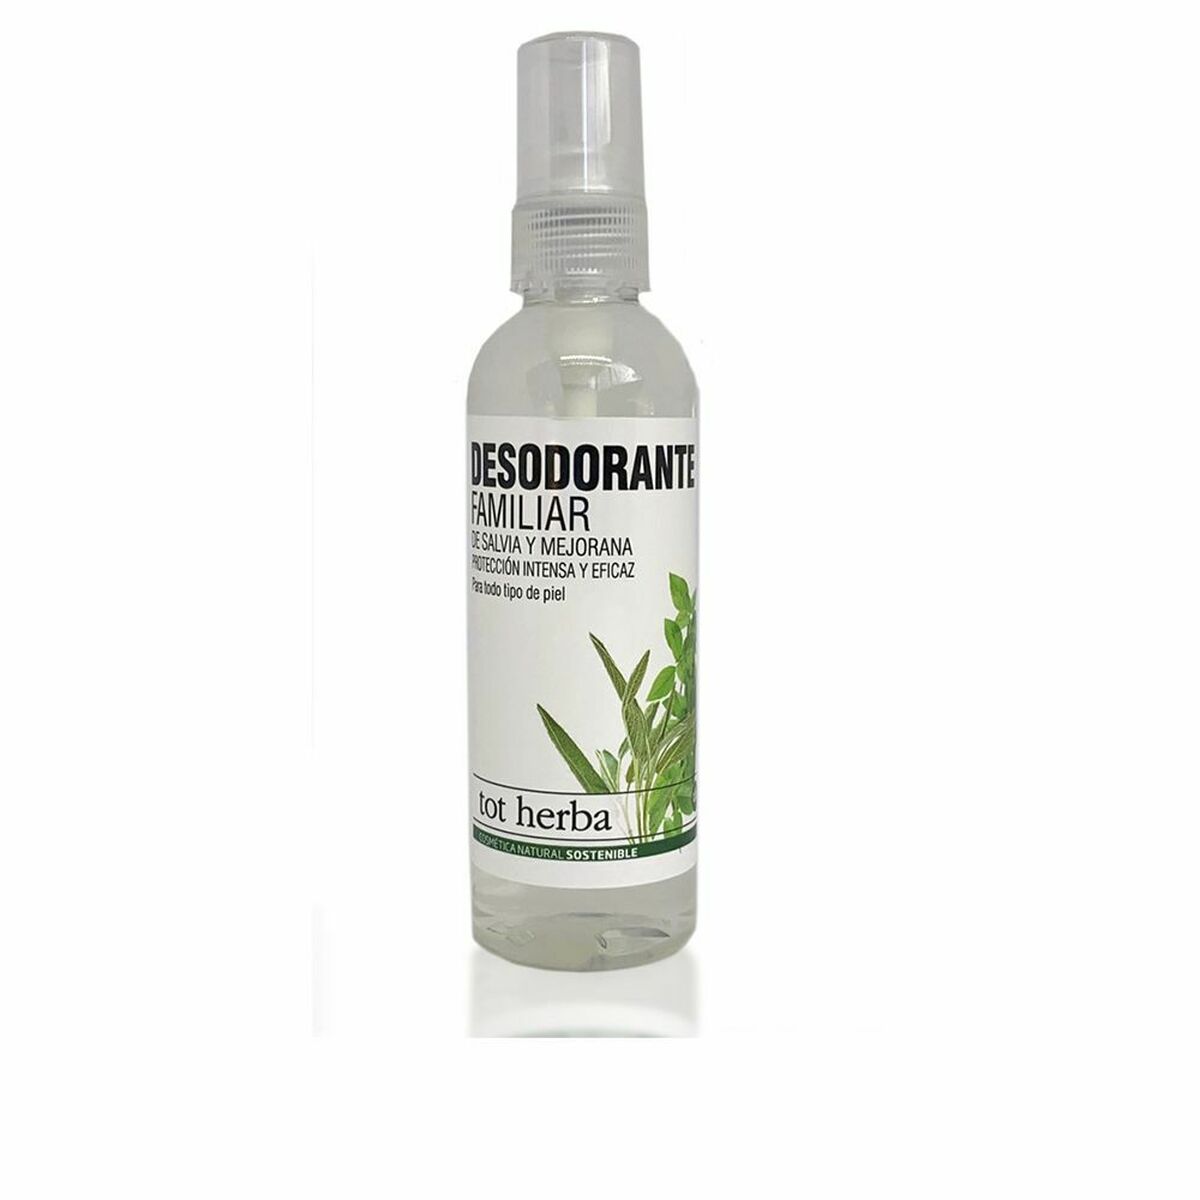 Razpršilni deodorant tot herba 007970045 100 ml